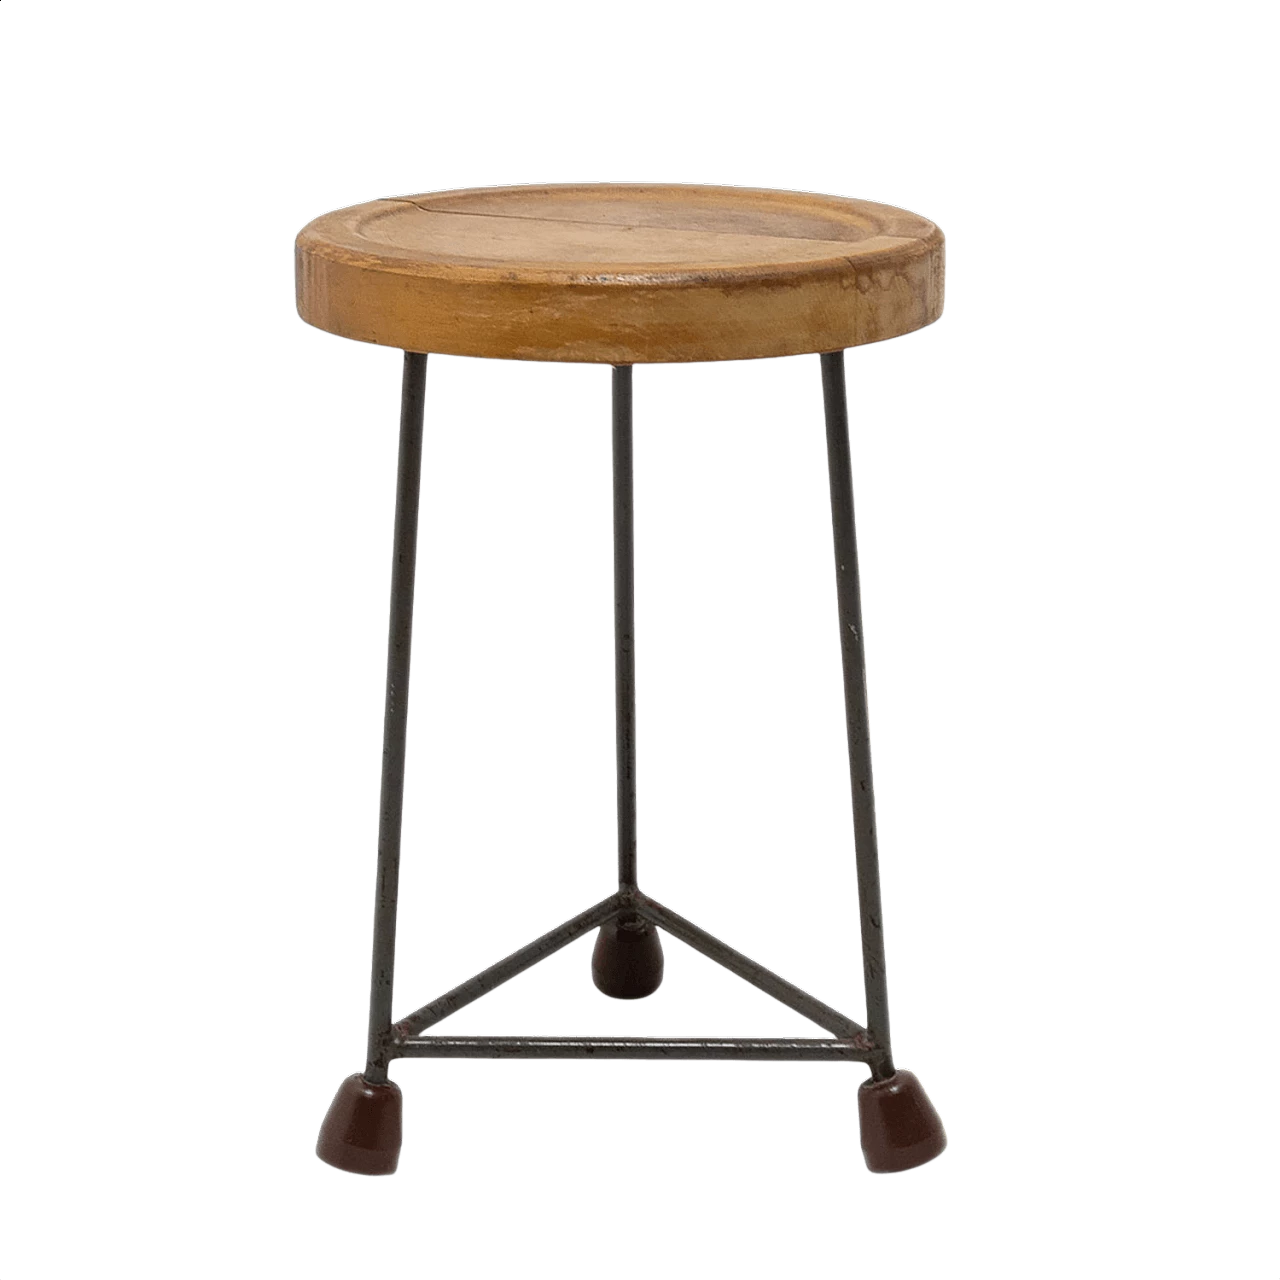 Czechoslovakian industrial stool, 1950s 1370211